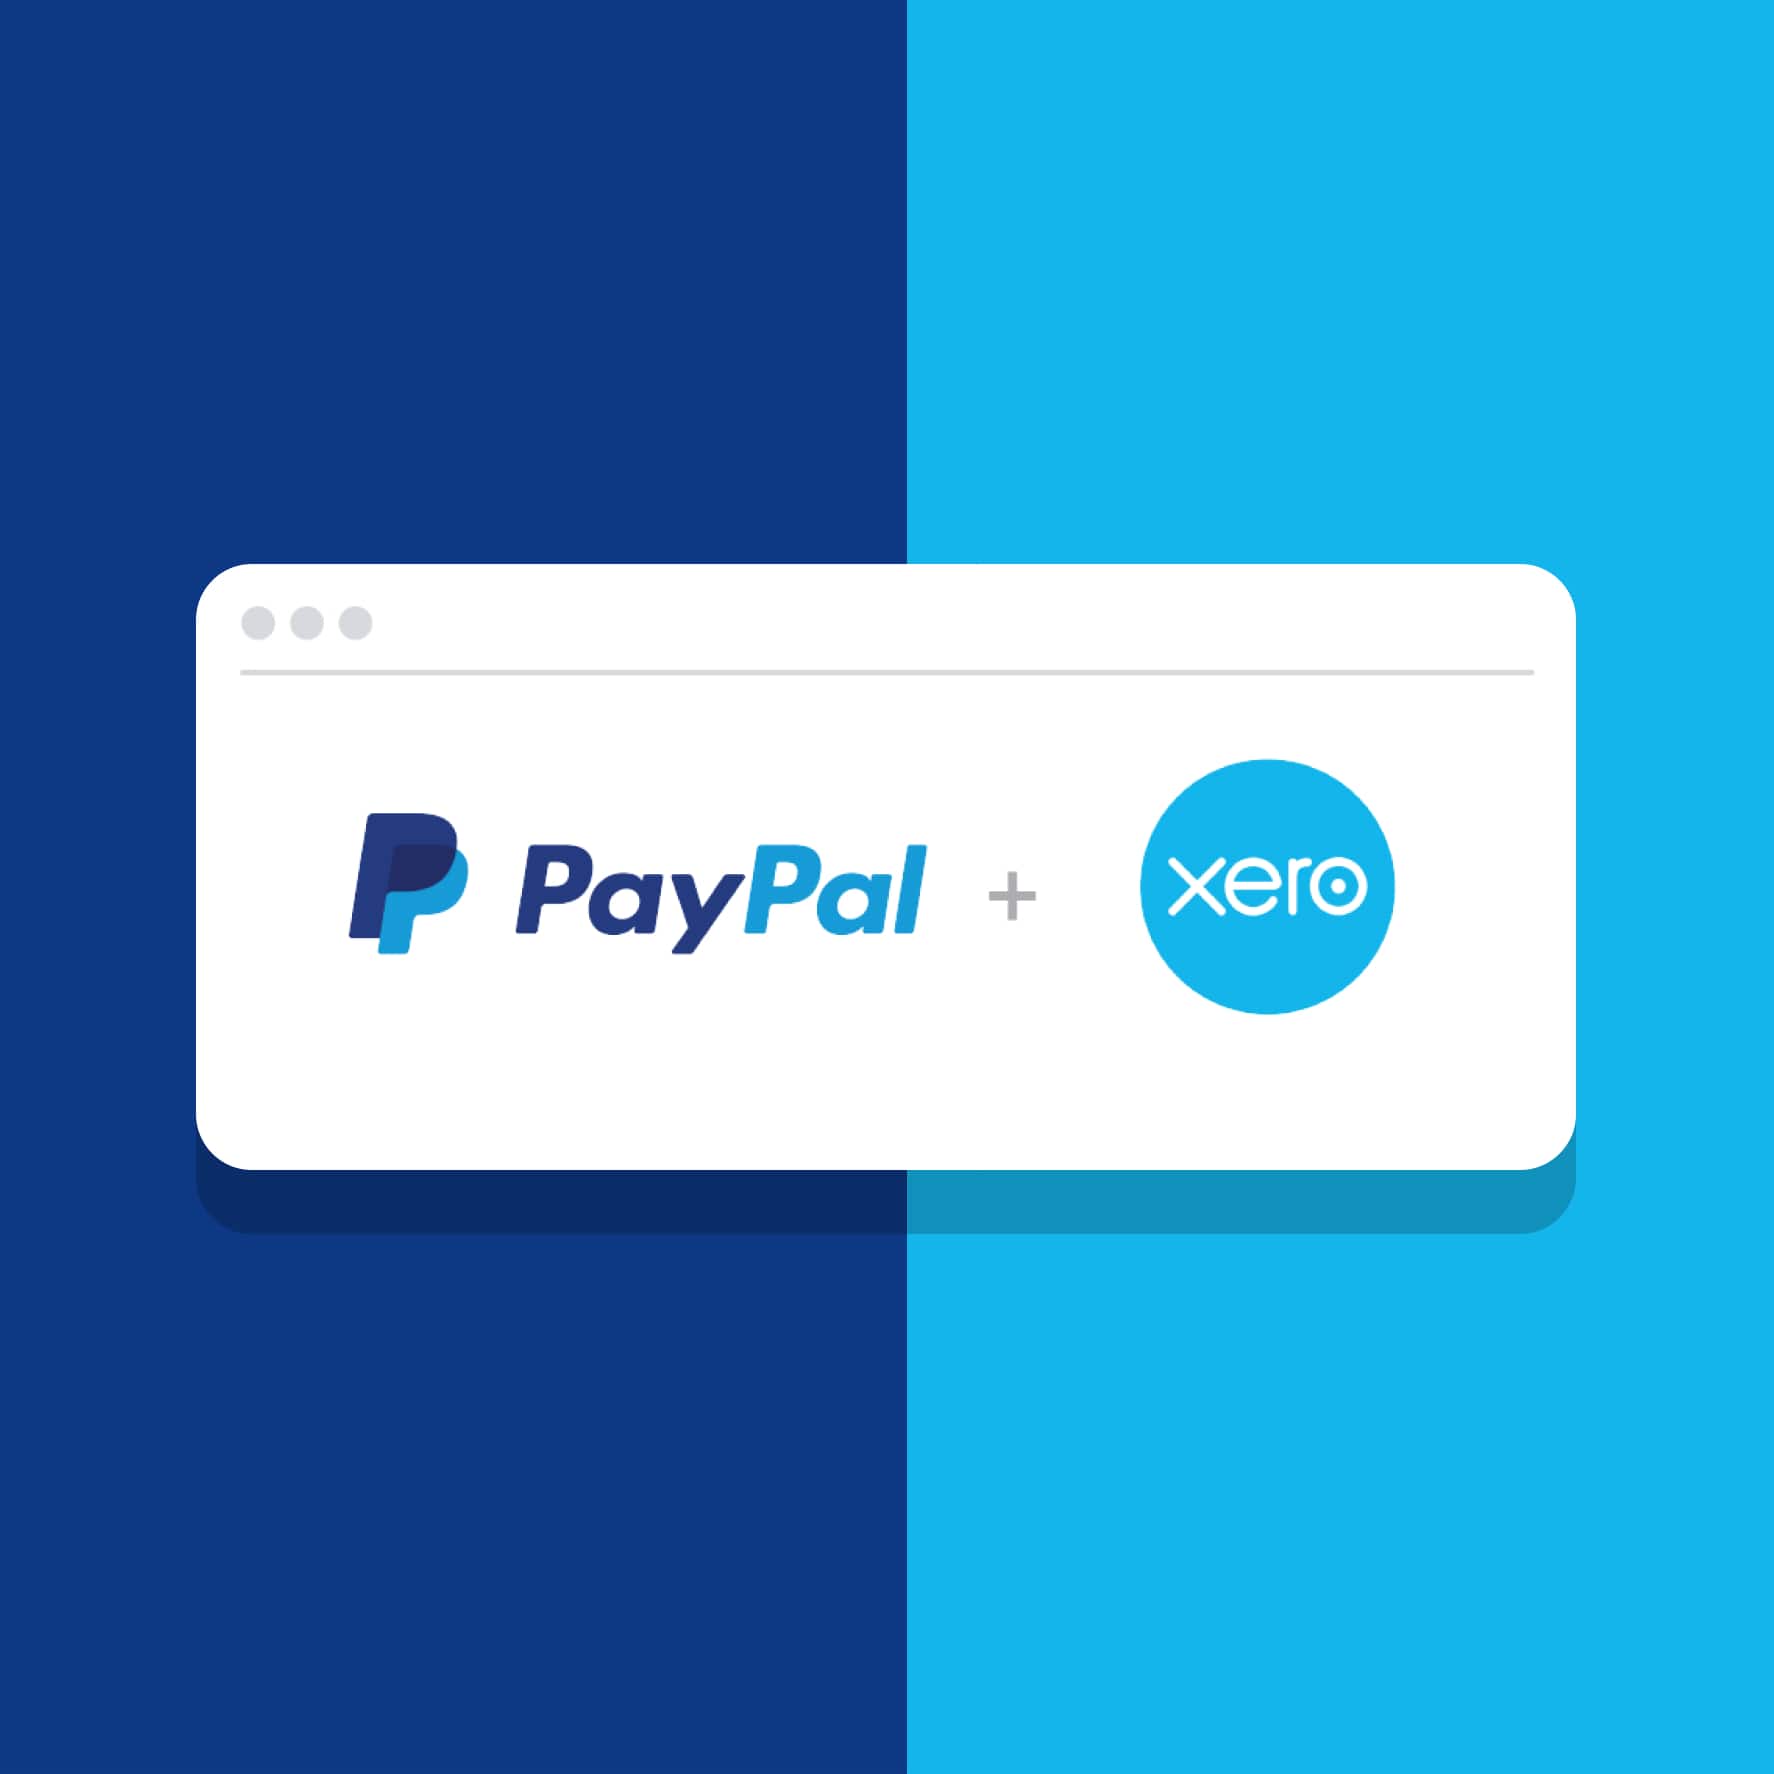 Paypal + Xero composition